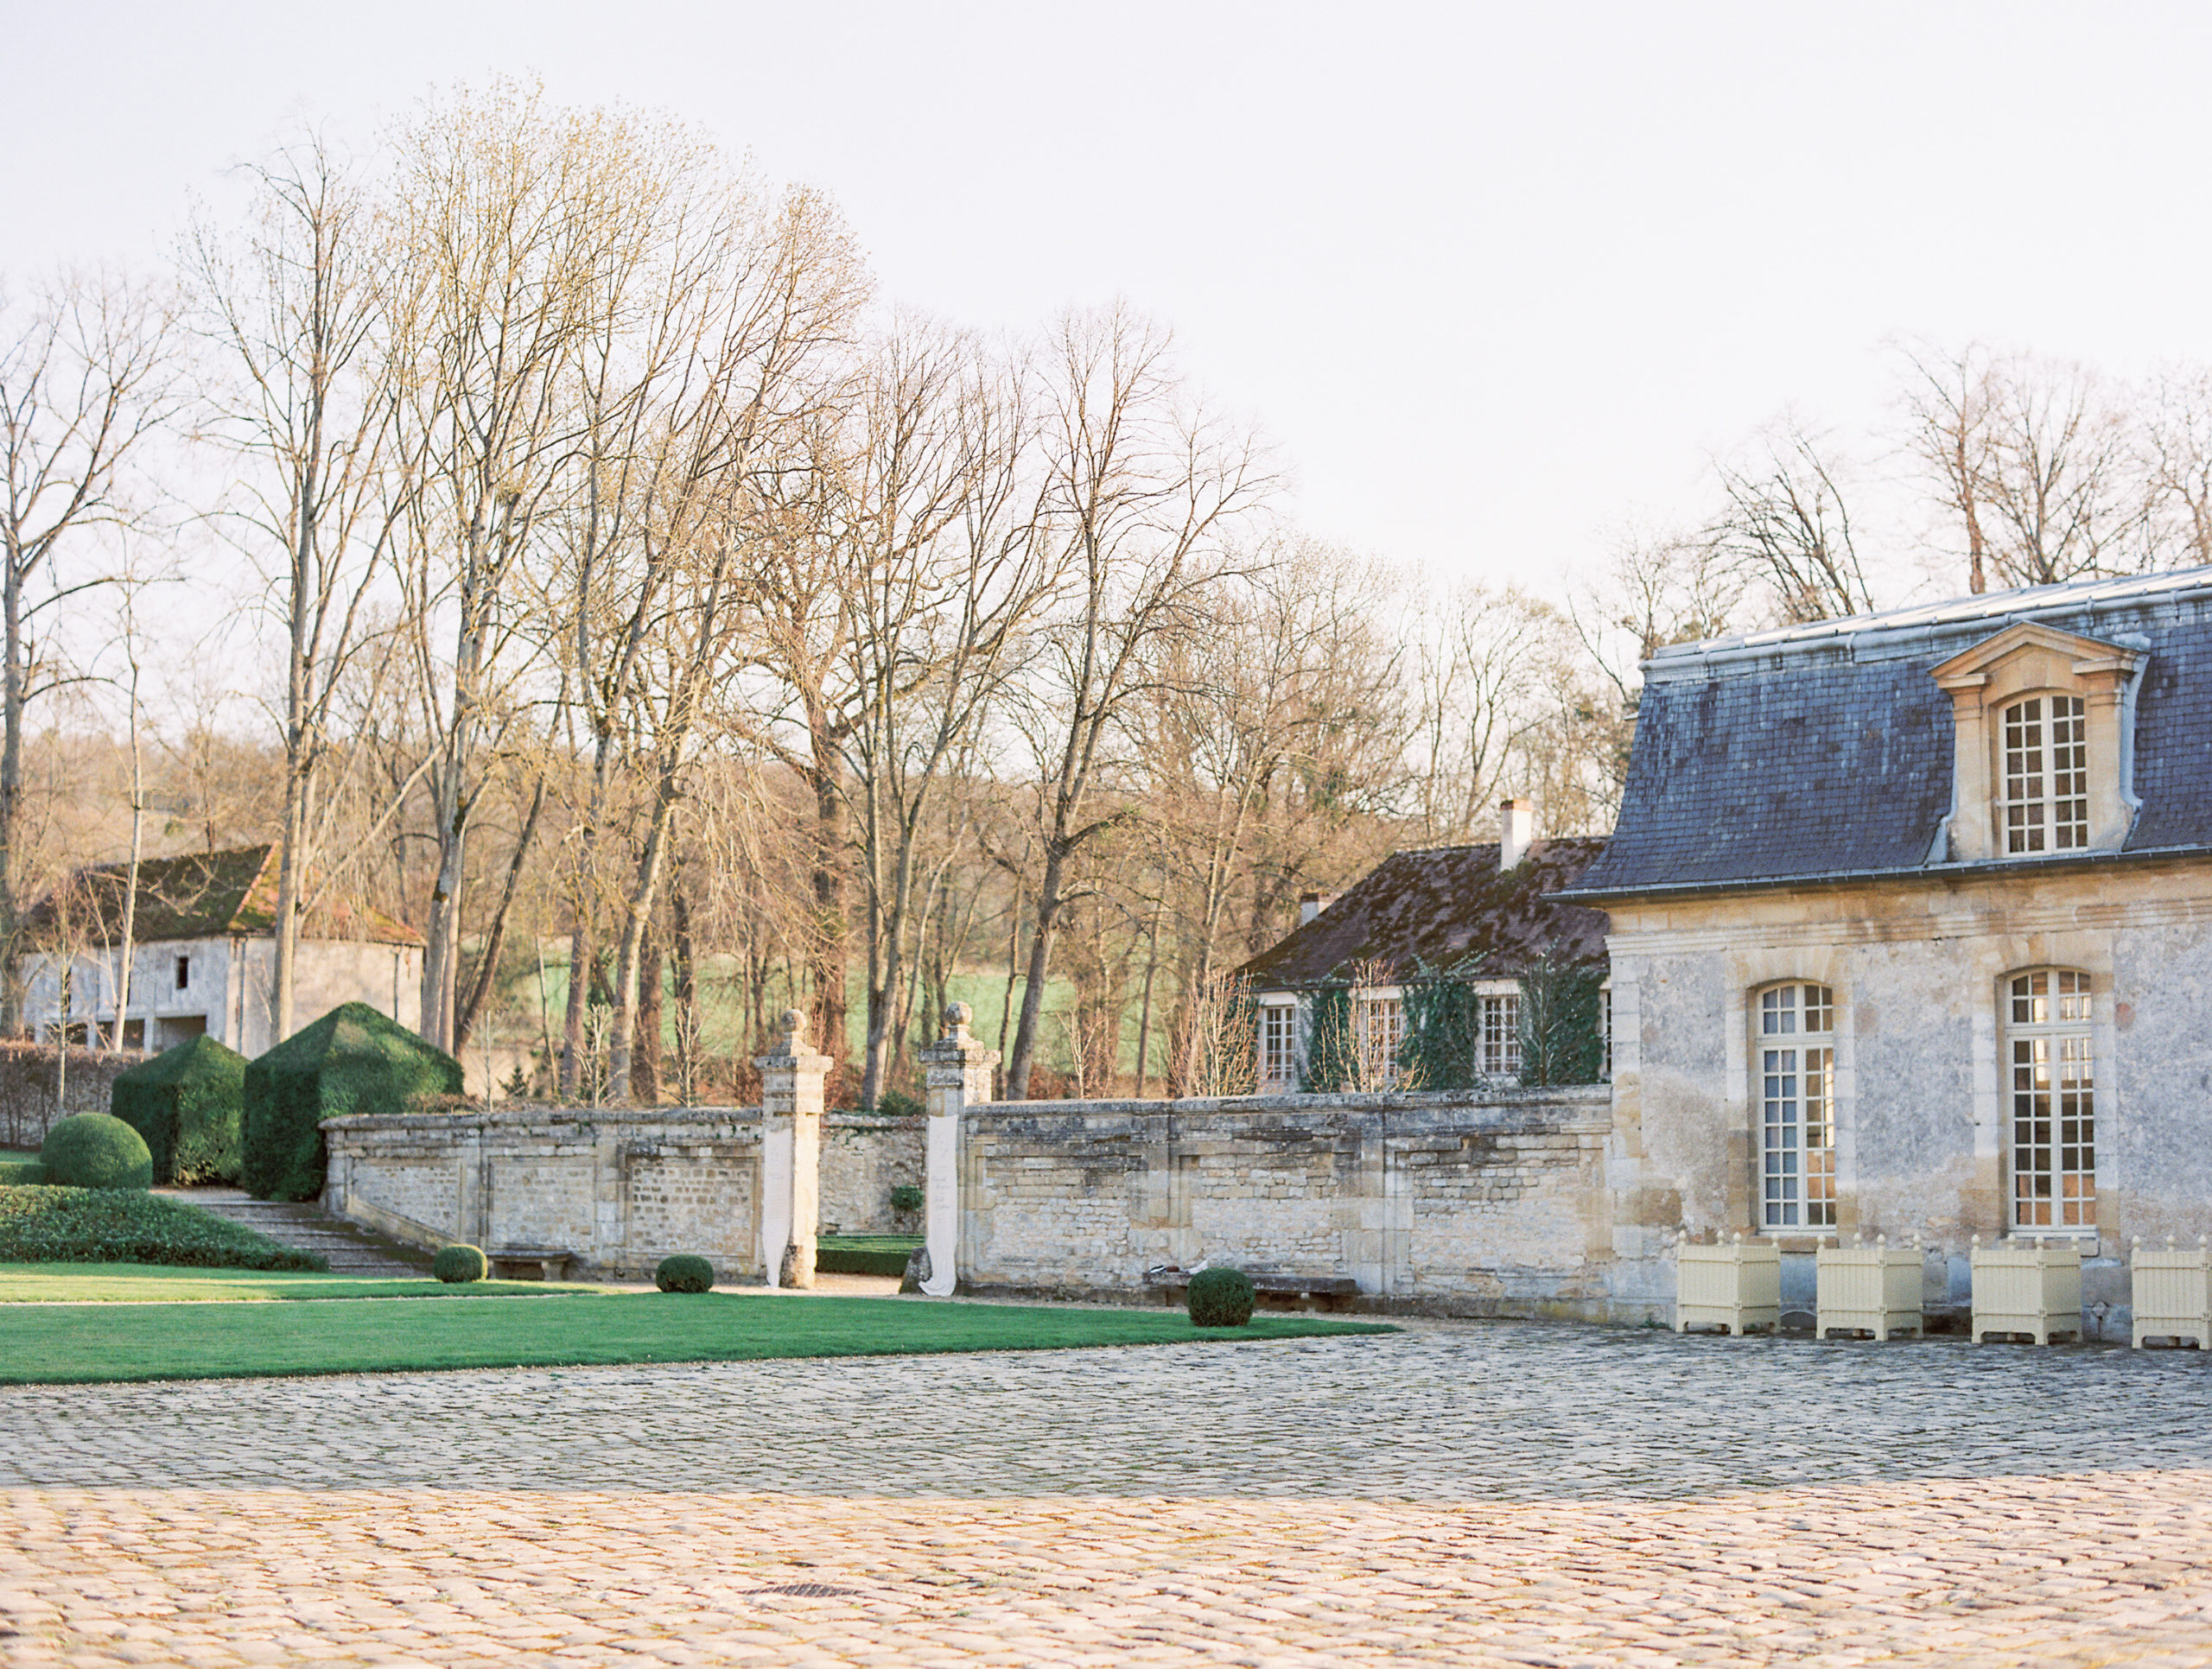 Chateau de Villette Wedding Photography venue with stone 